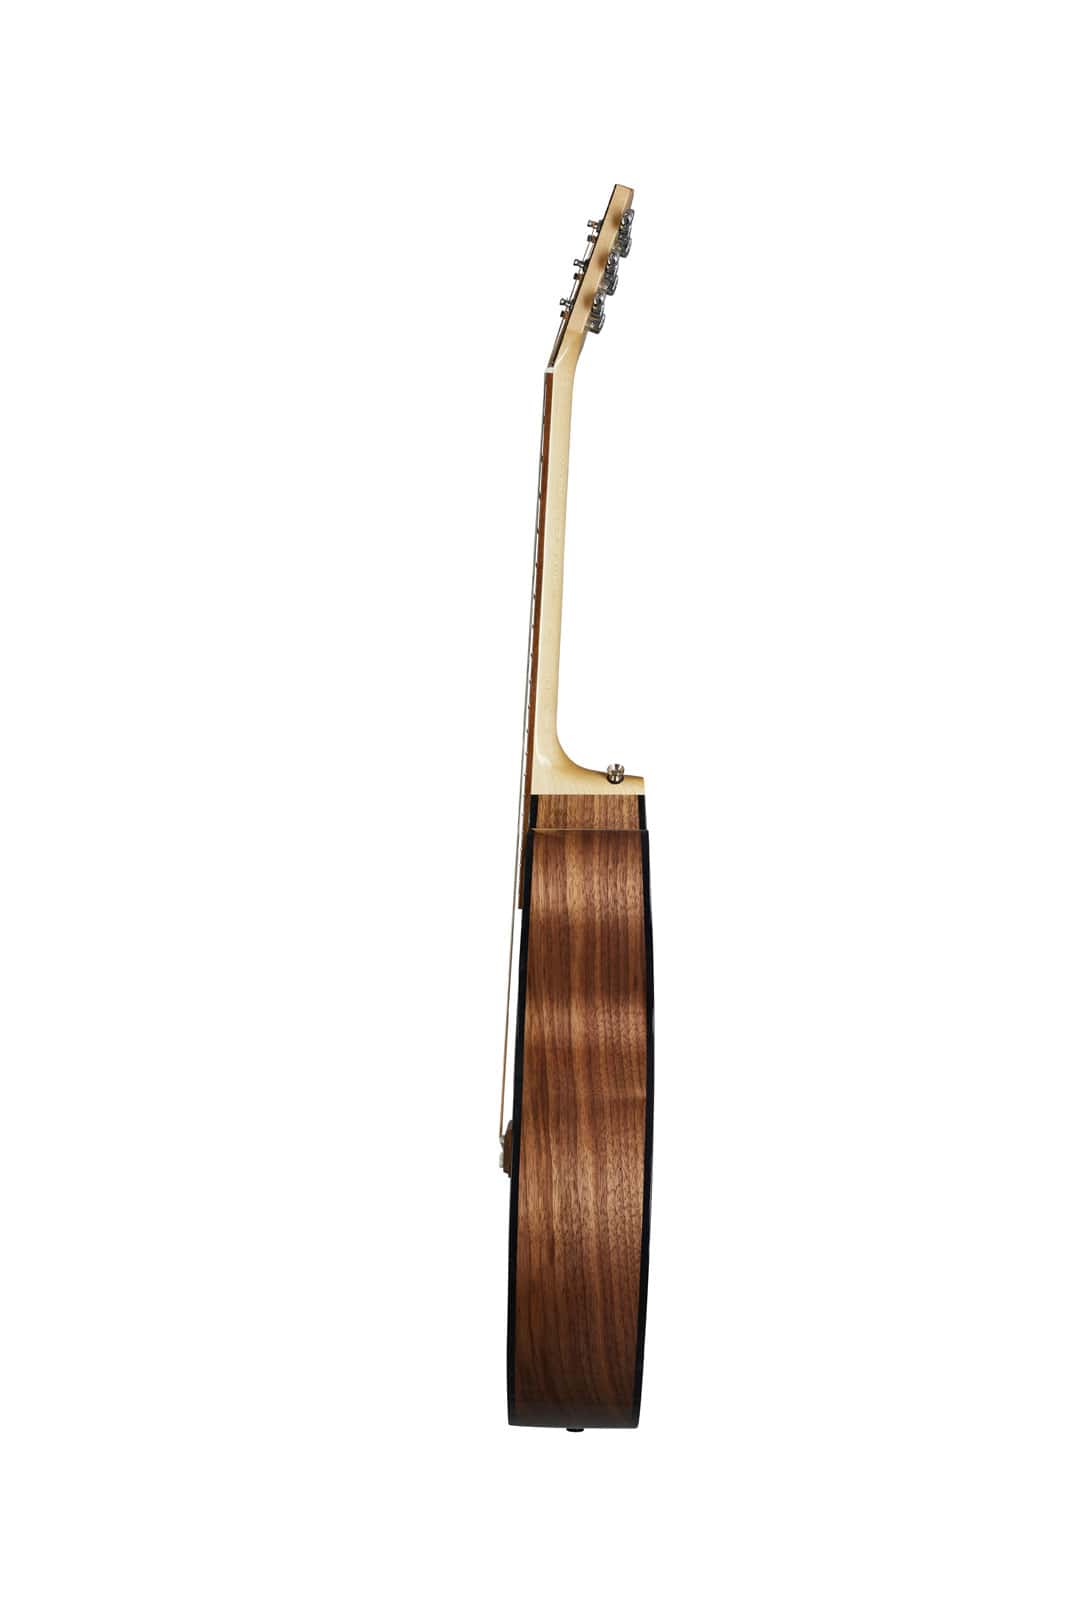 Guitares Gauchers Gibson J 185 12 cordes gaucher OCCASION Naturelle 2600 €